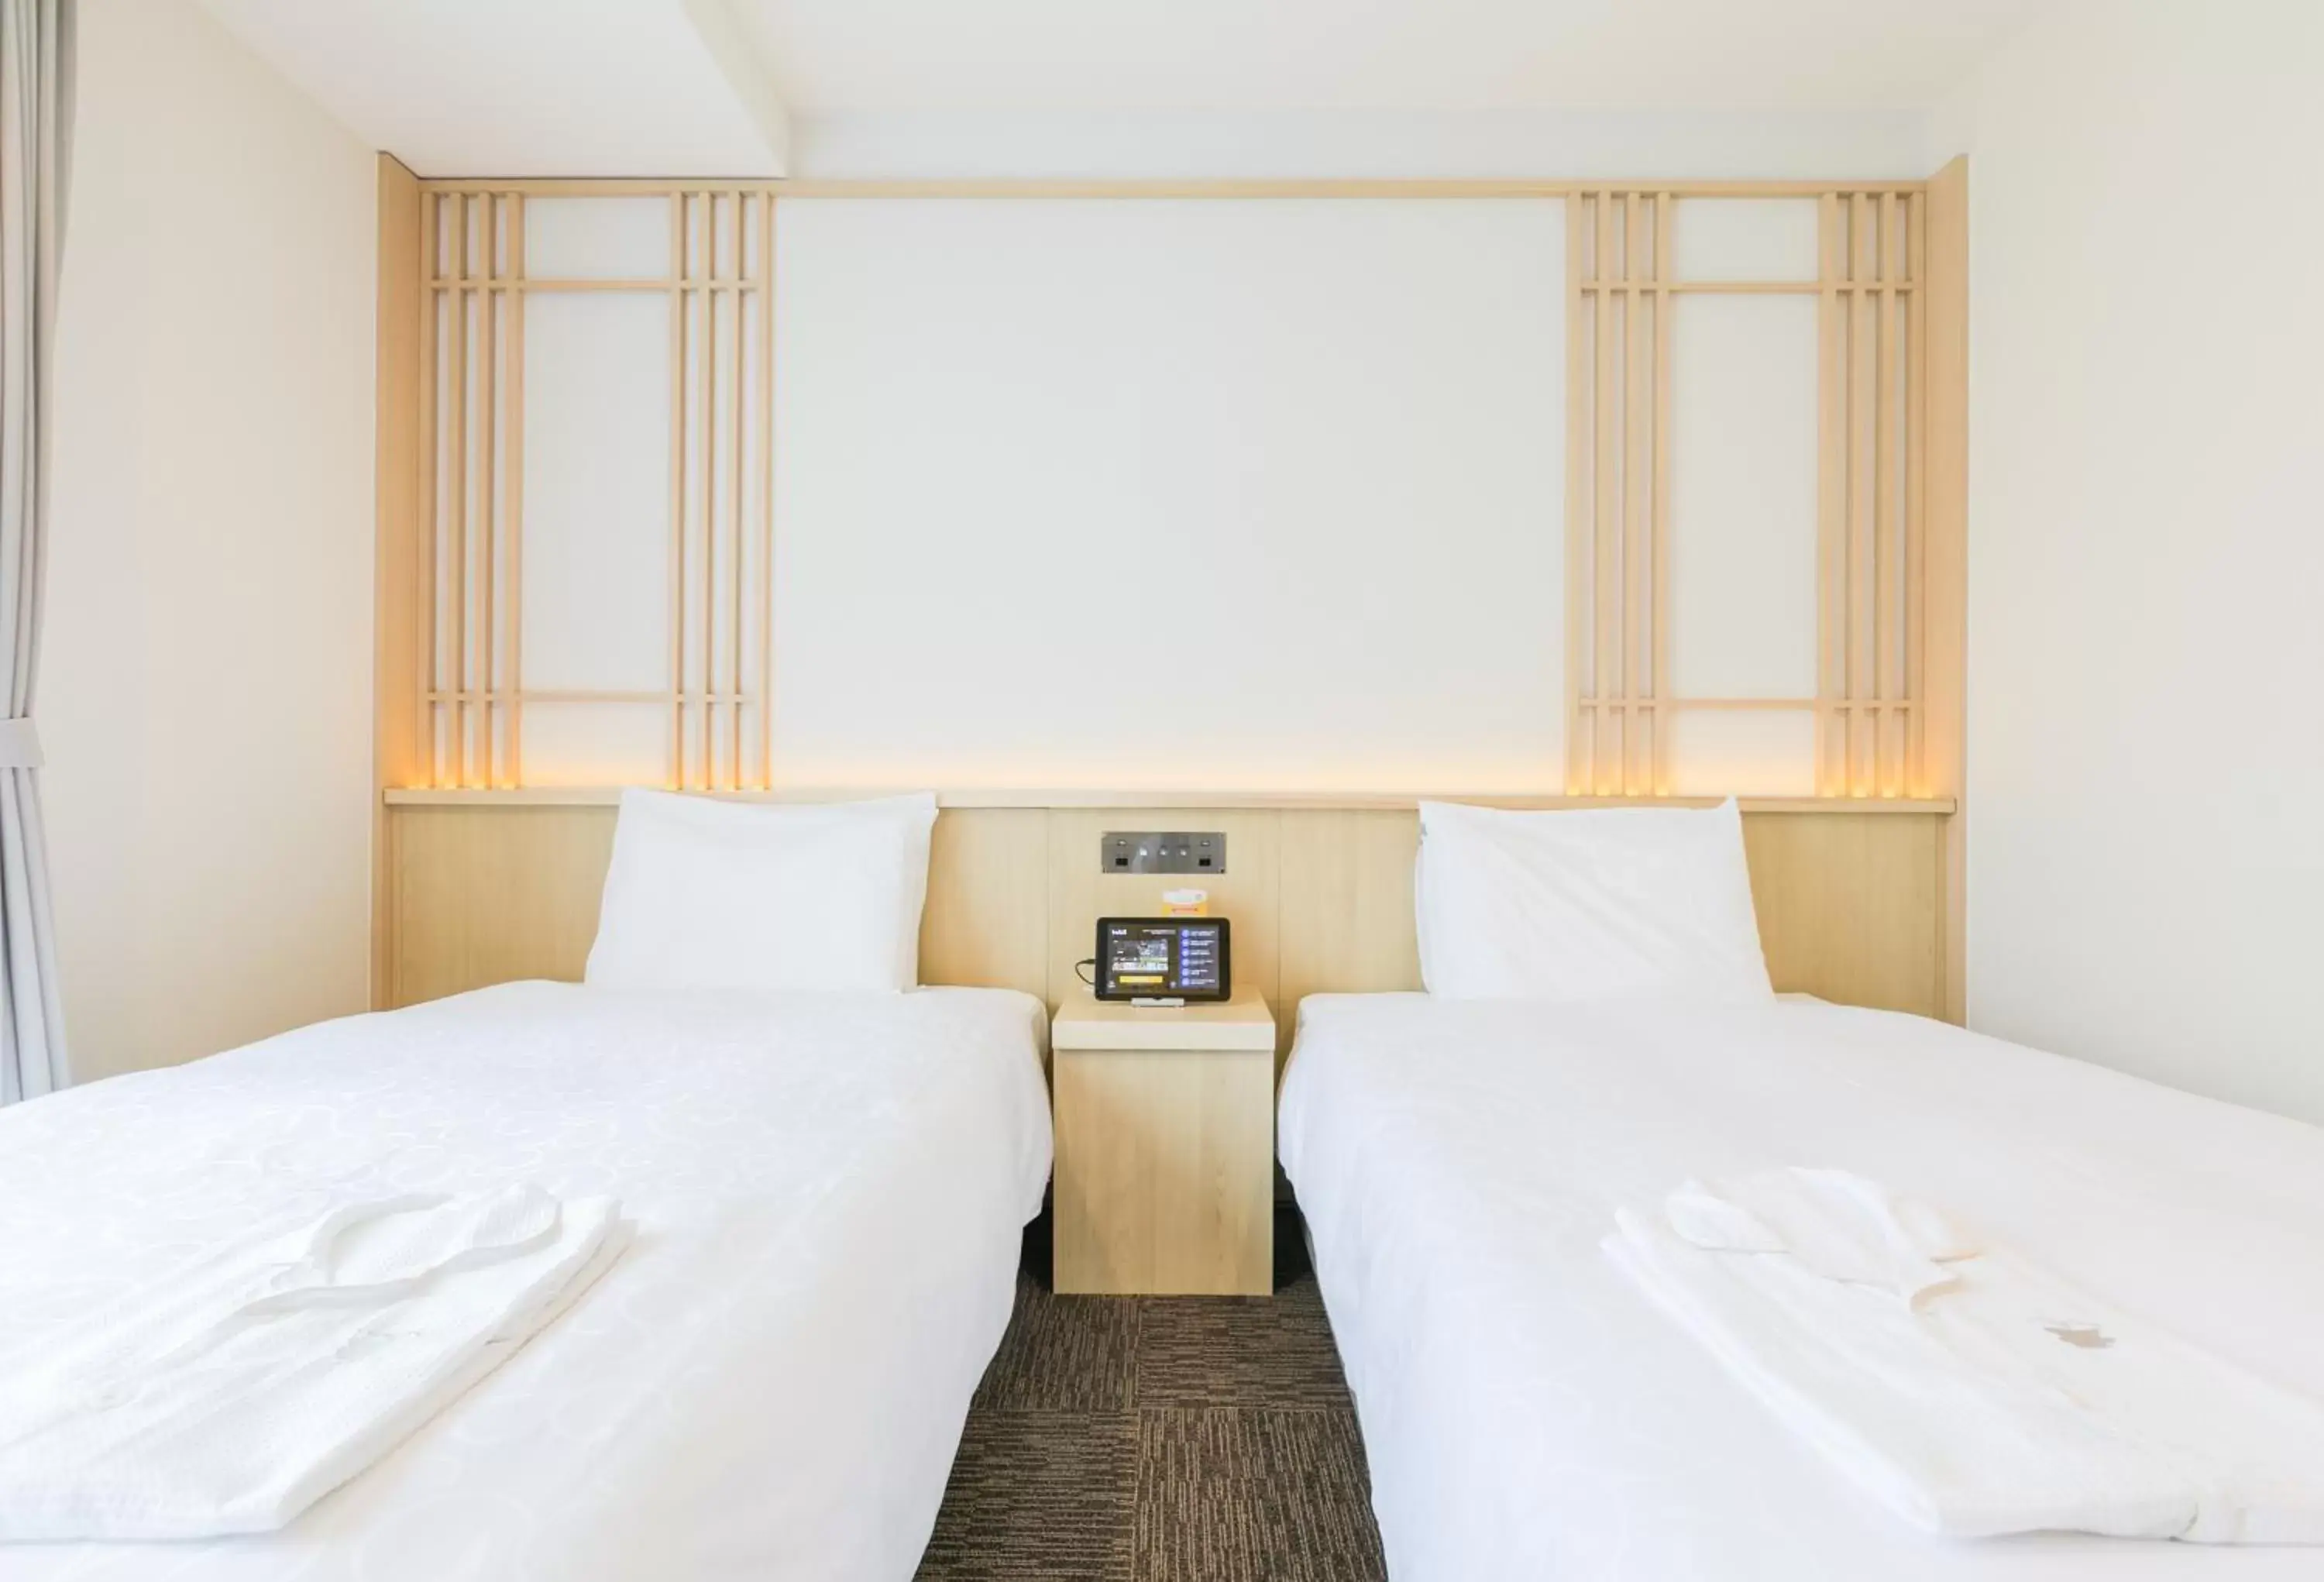 Bed in Henn na Hotel Kyoto Hachijoguchi